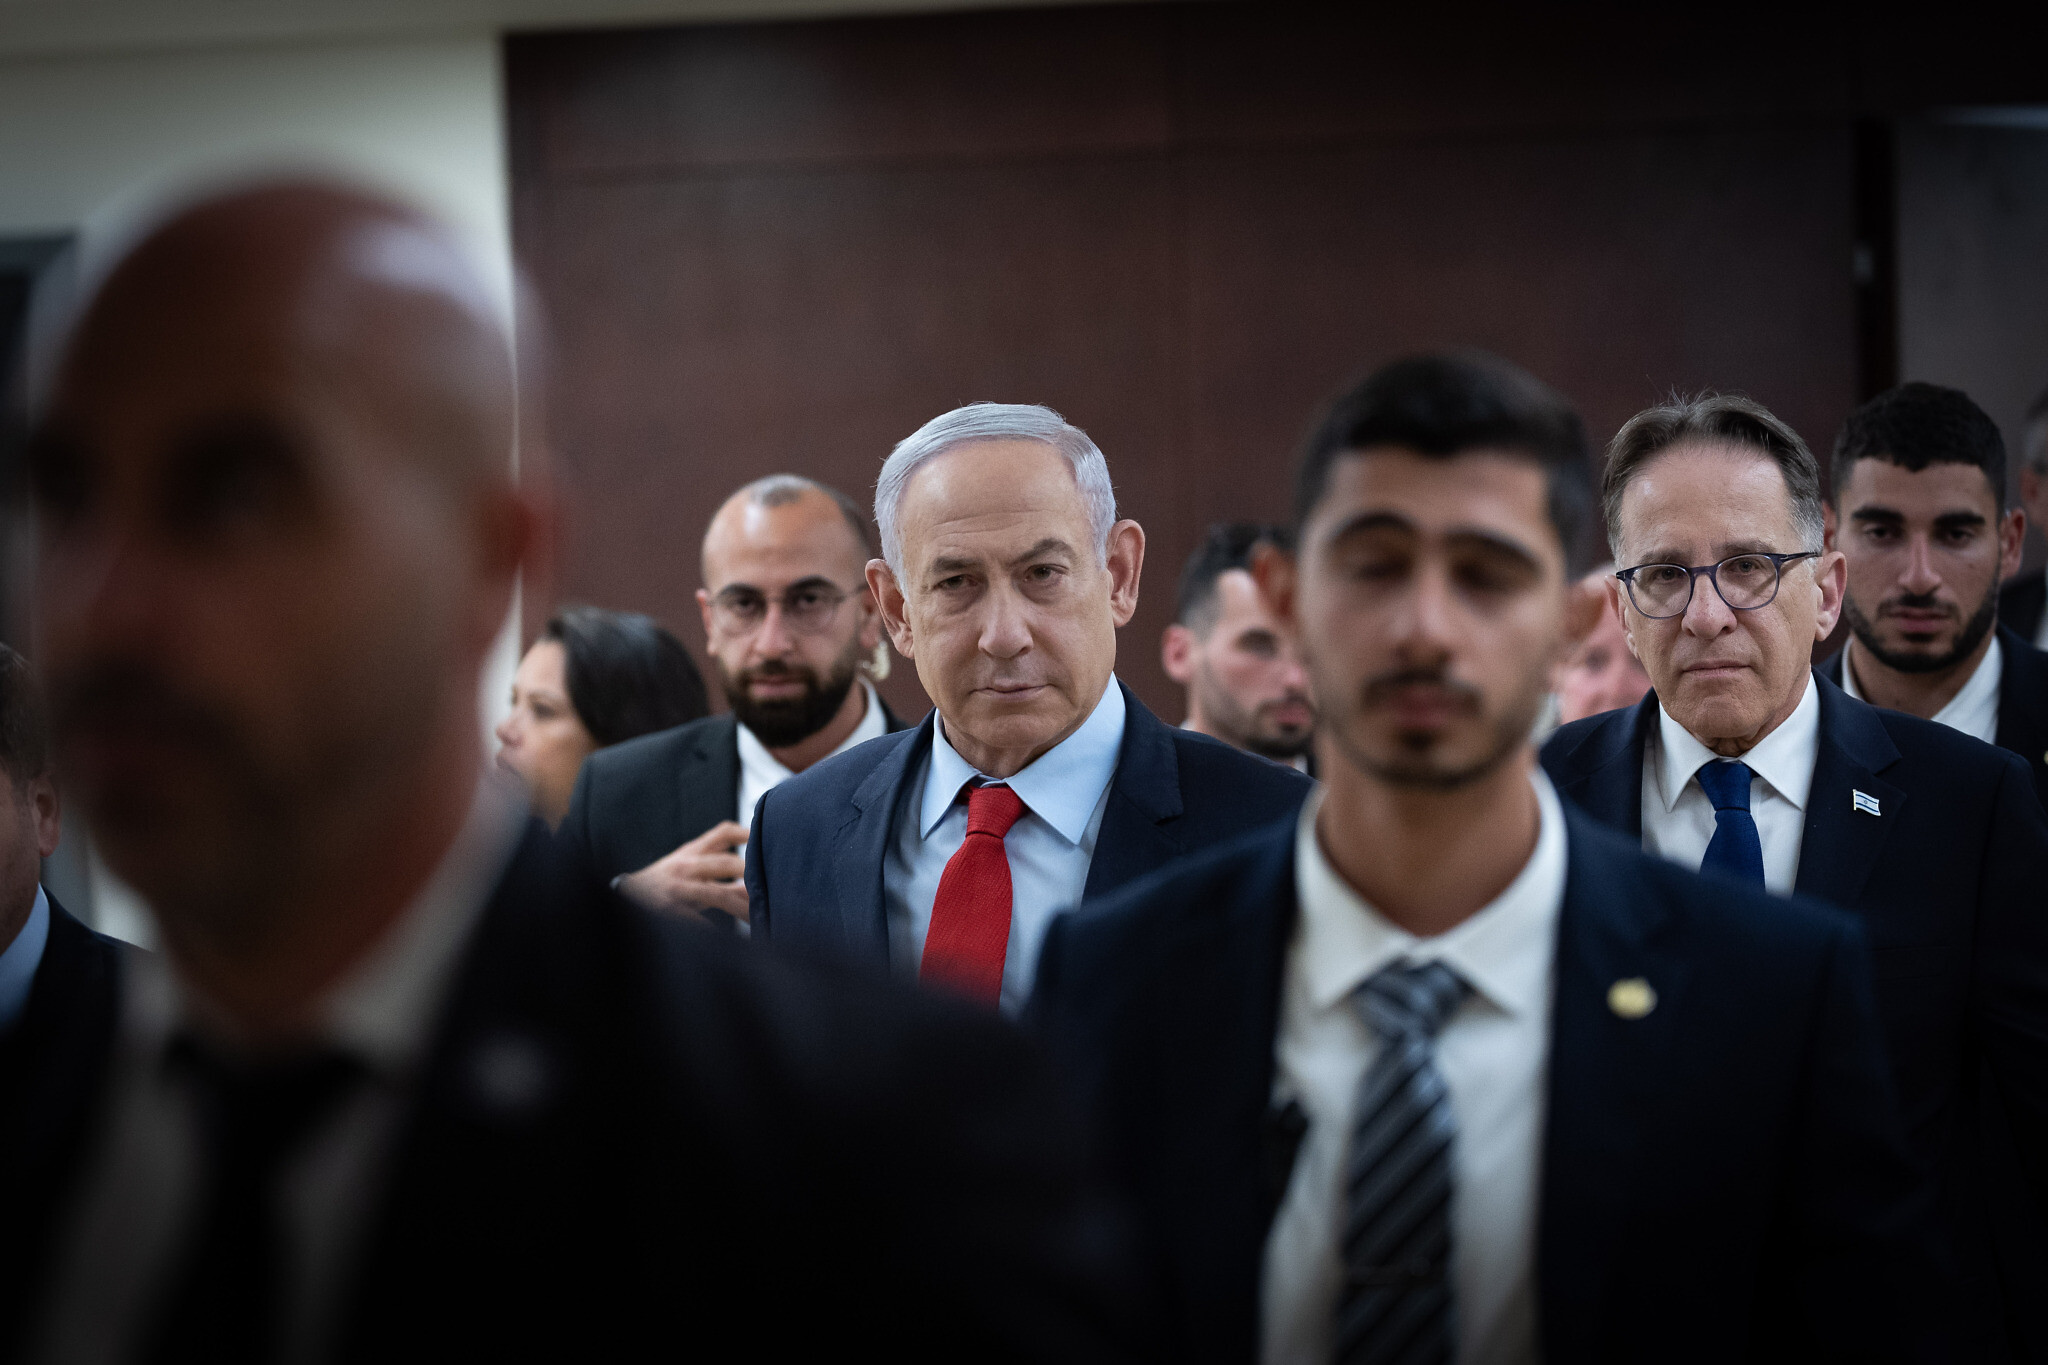 Perplexe face à une « réaction excessive », la Maison Blanche affirme que le Premier ministre attise la crise dans les relations américano-israéliennes